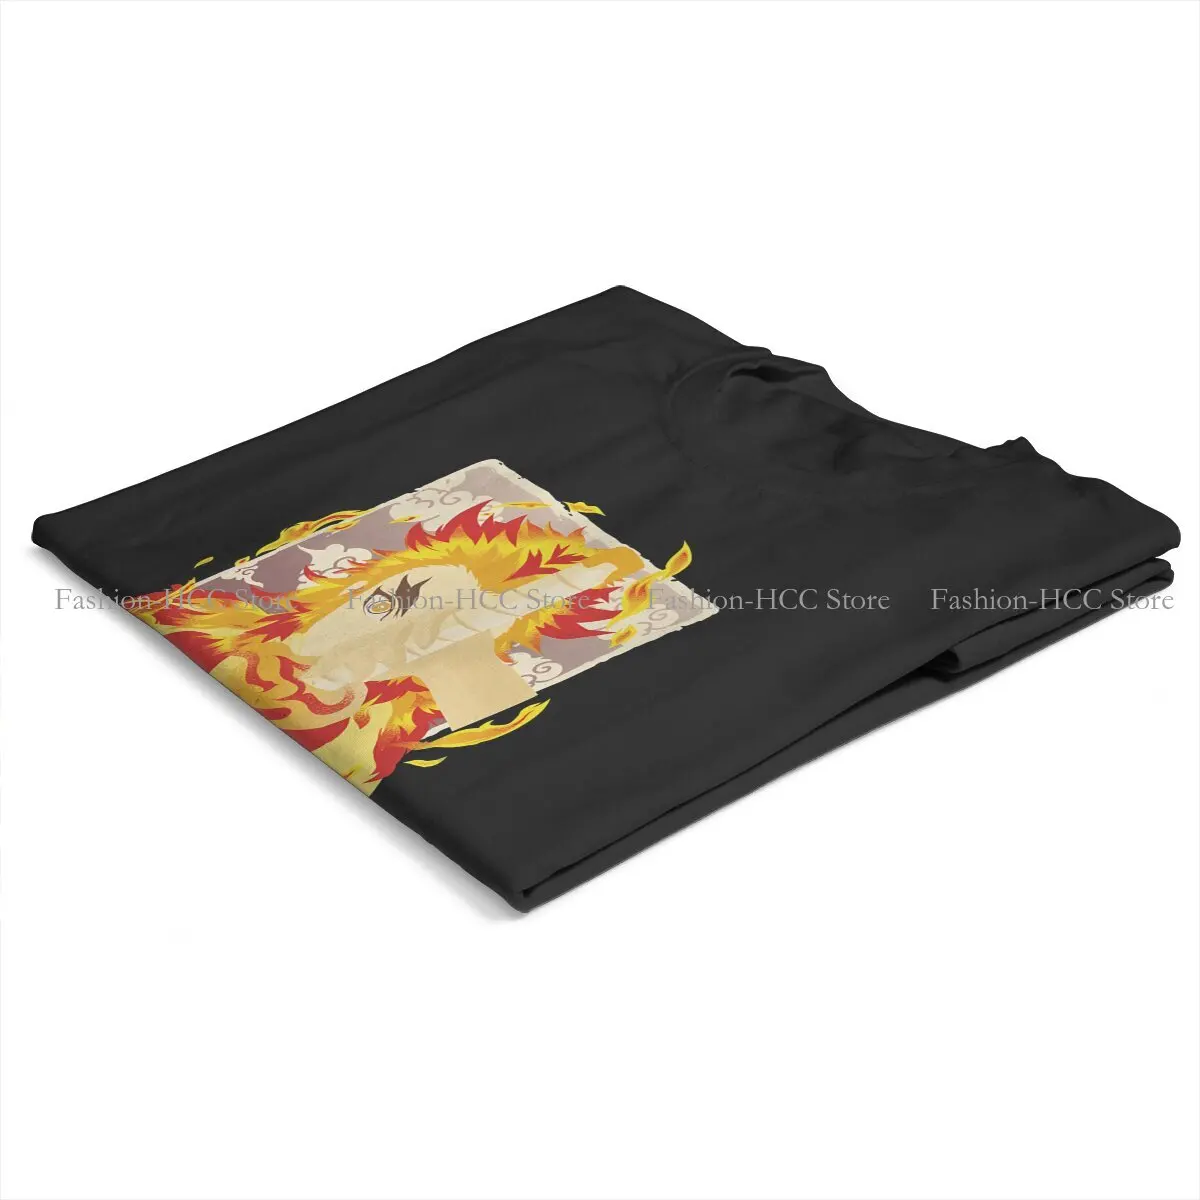 Футболки Demon Slayer, мужская футболка с огненным принтом Kyo Juro, забавная одежда